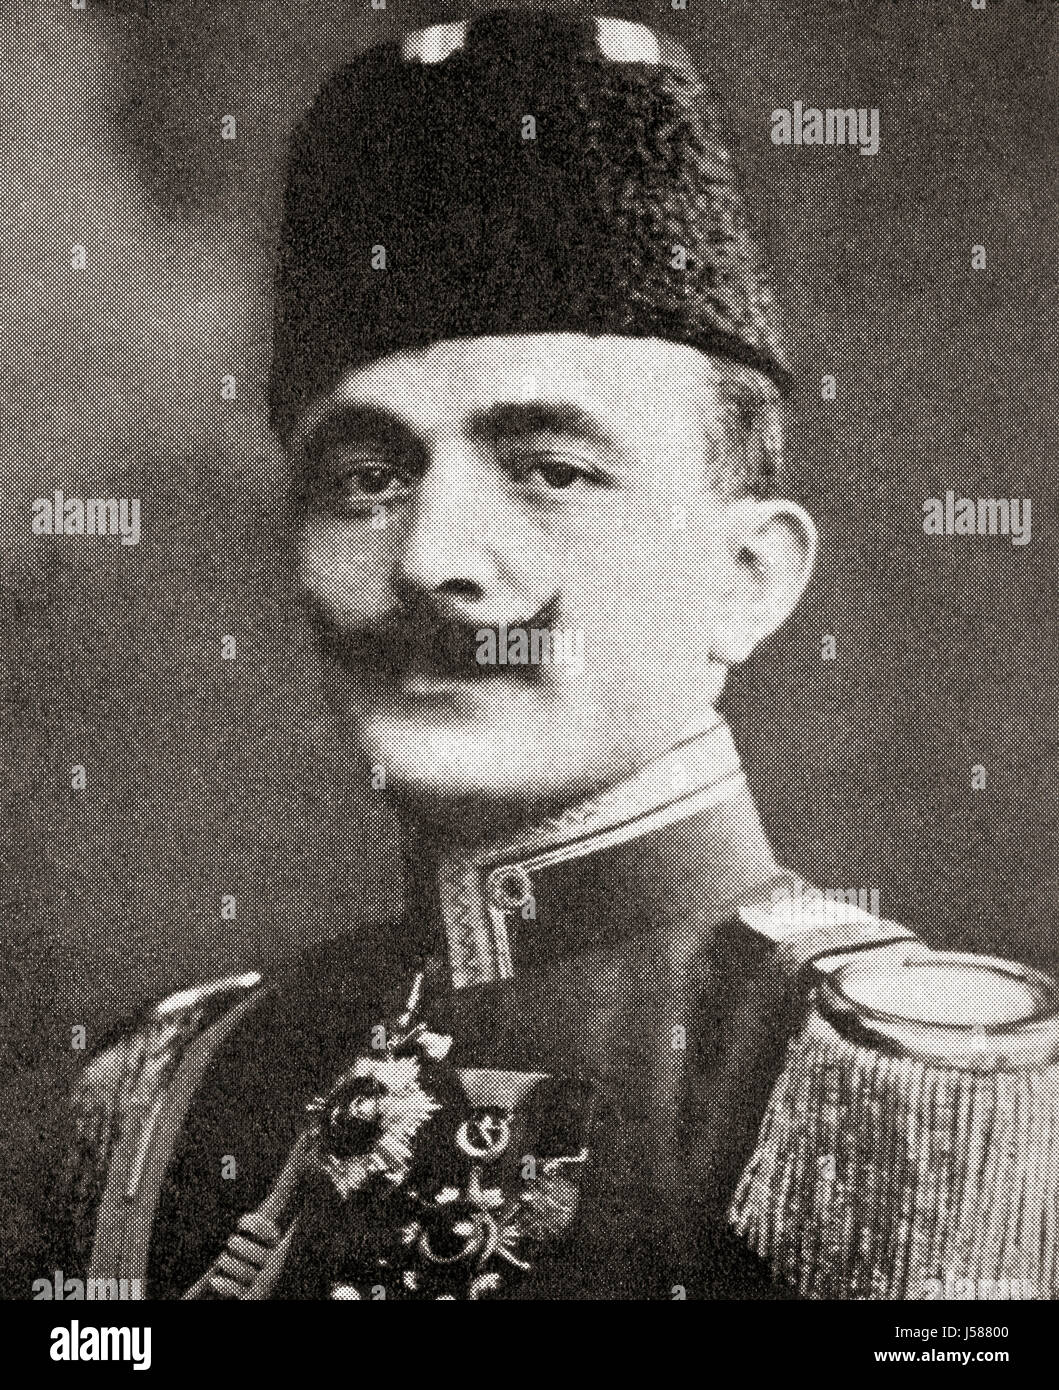 Ismail Enver Pascià, 1881 - 1922. Ottoman ufficiale militare e un leader del 1908 giovani Turk rivoluzione. Da Hutchinson nella storia delle nazioni, pubblicato 1915. Foto Stock